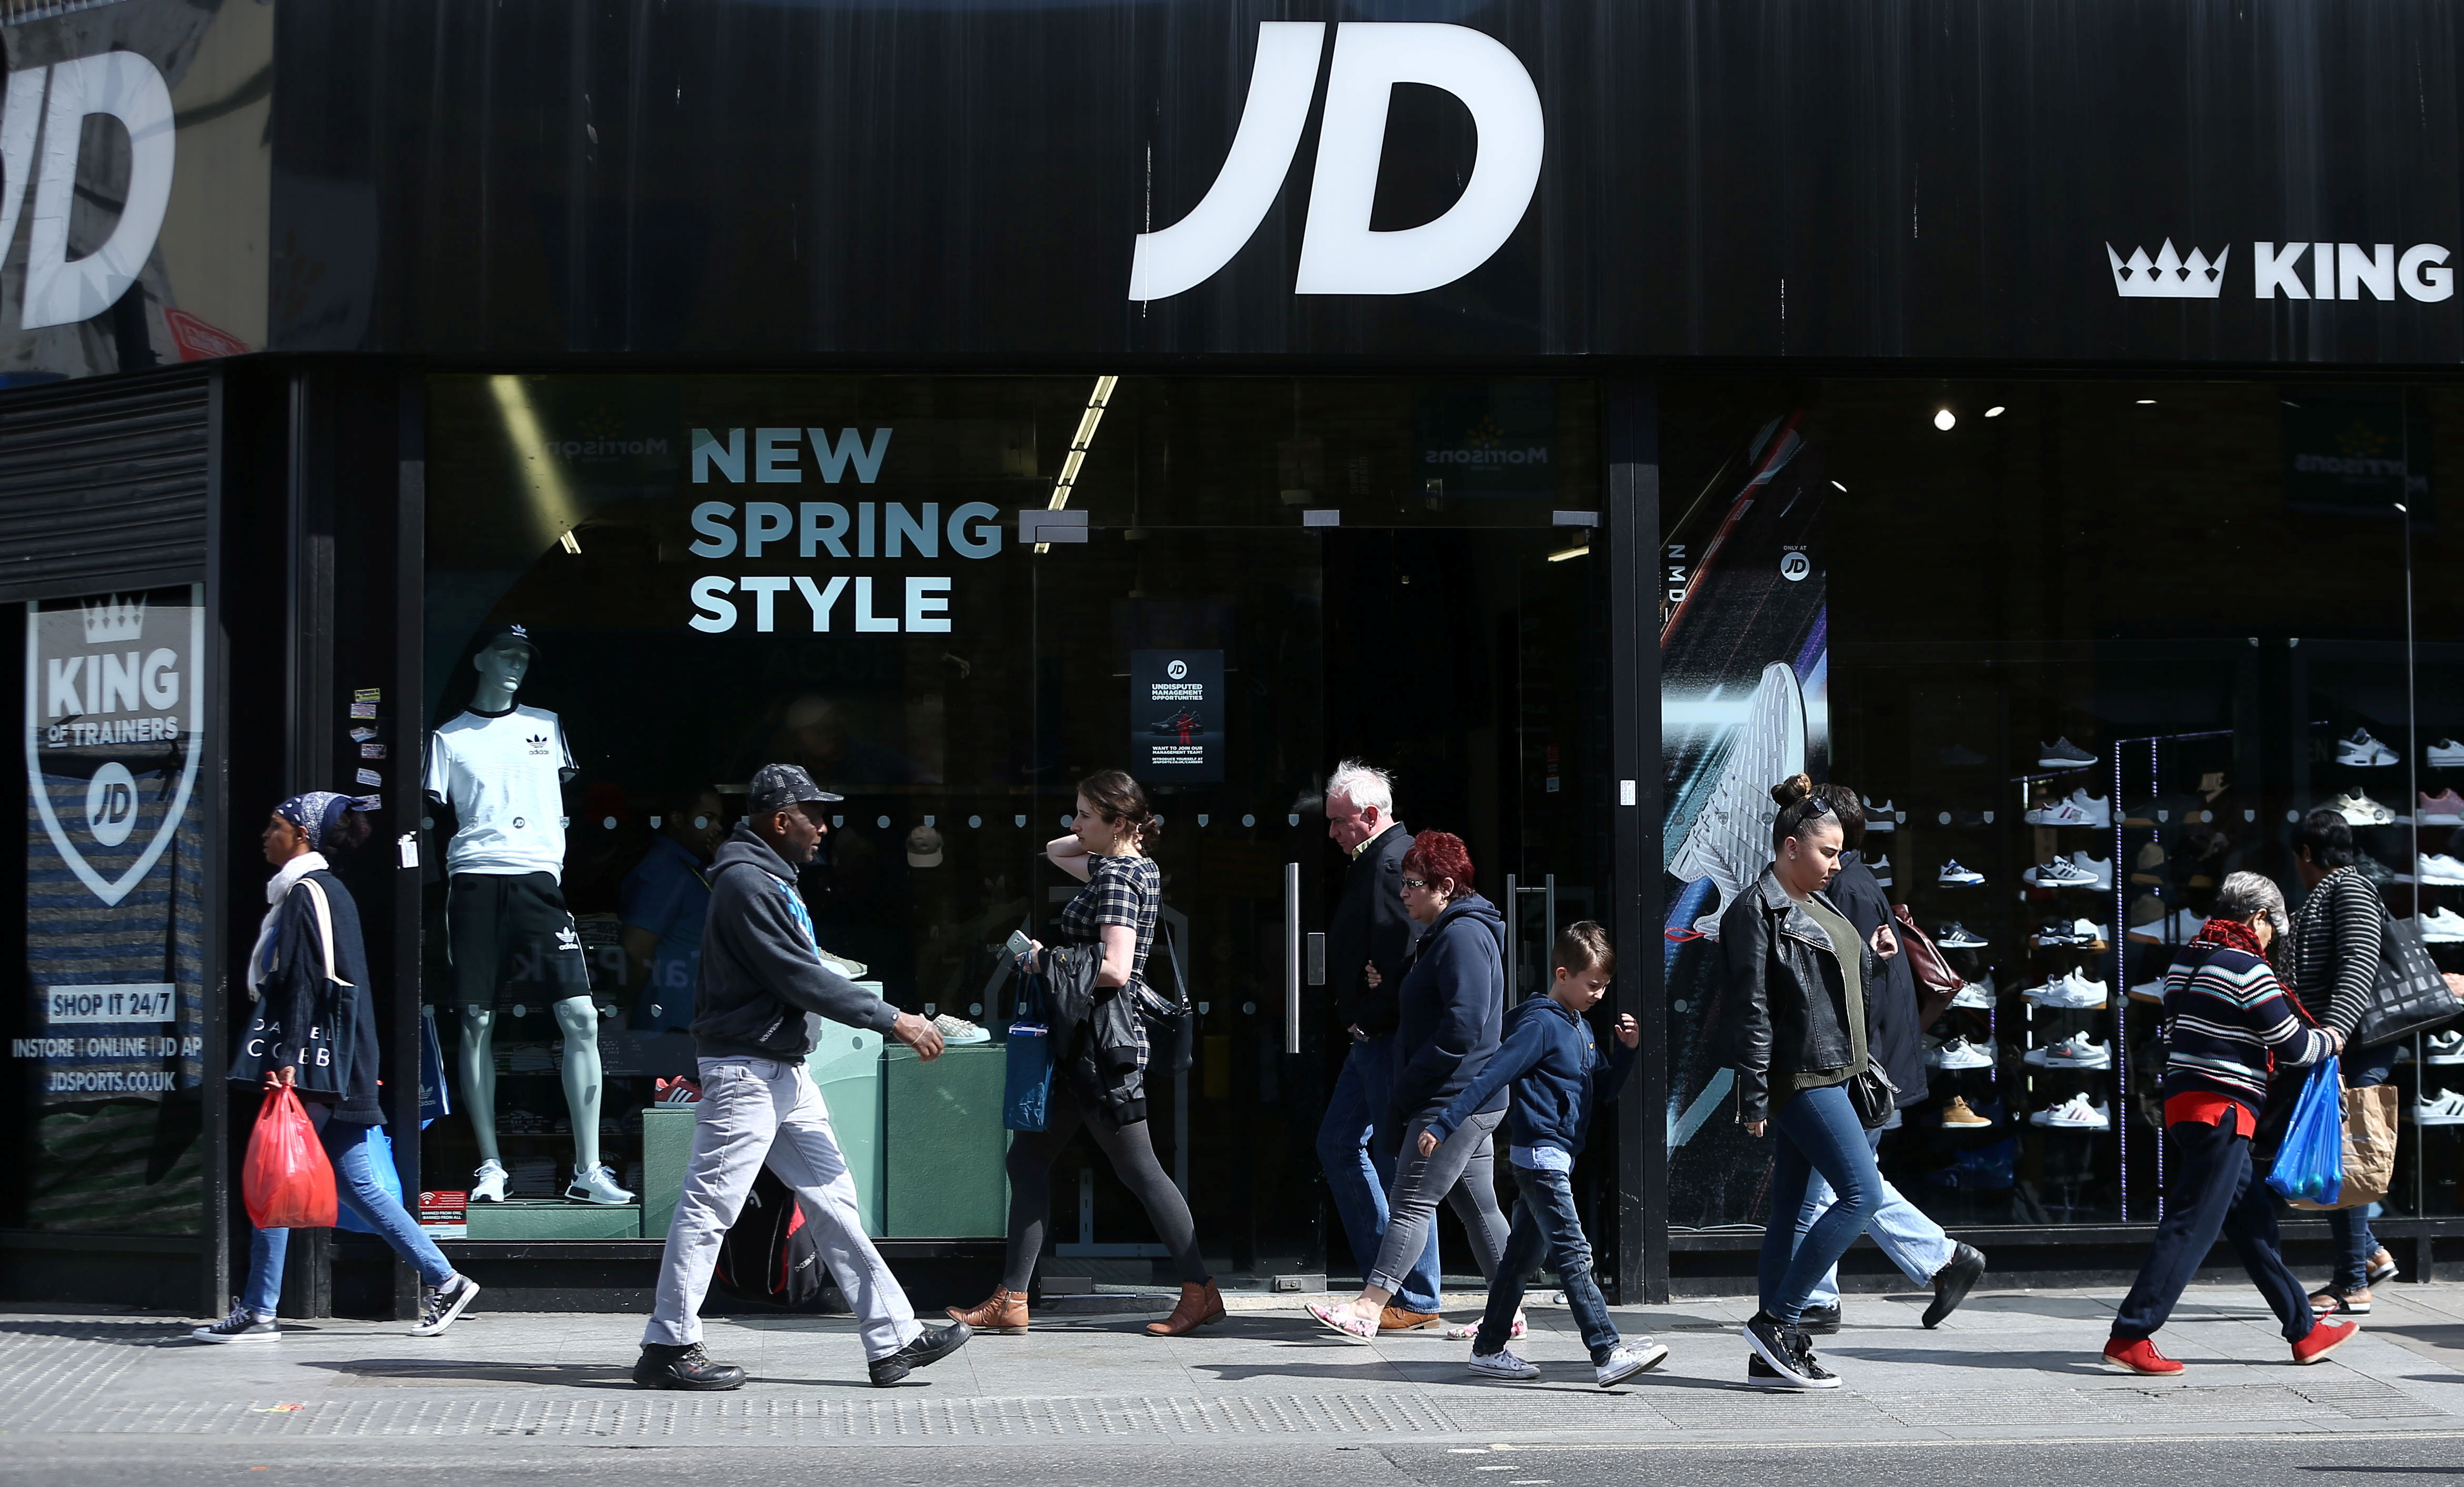 JD Sports shares plunge 20% after profit warning